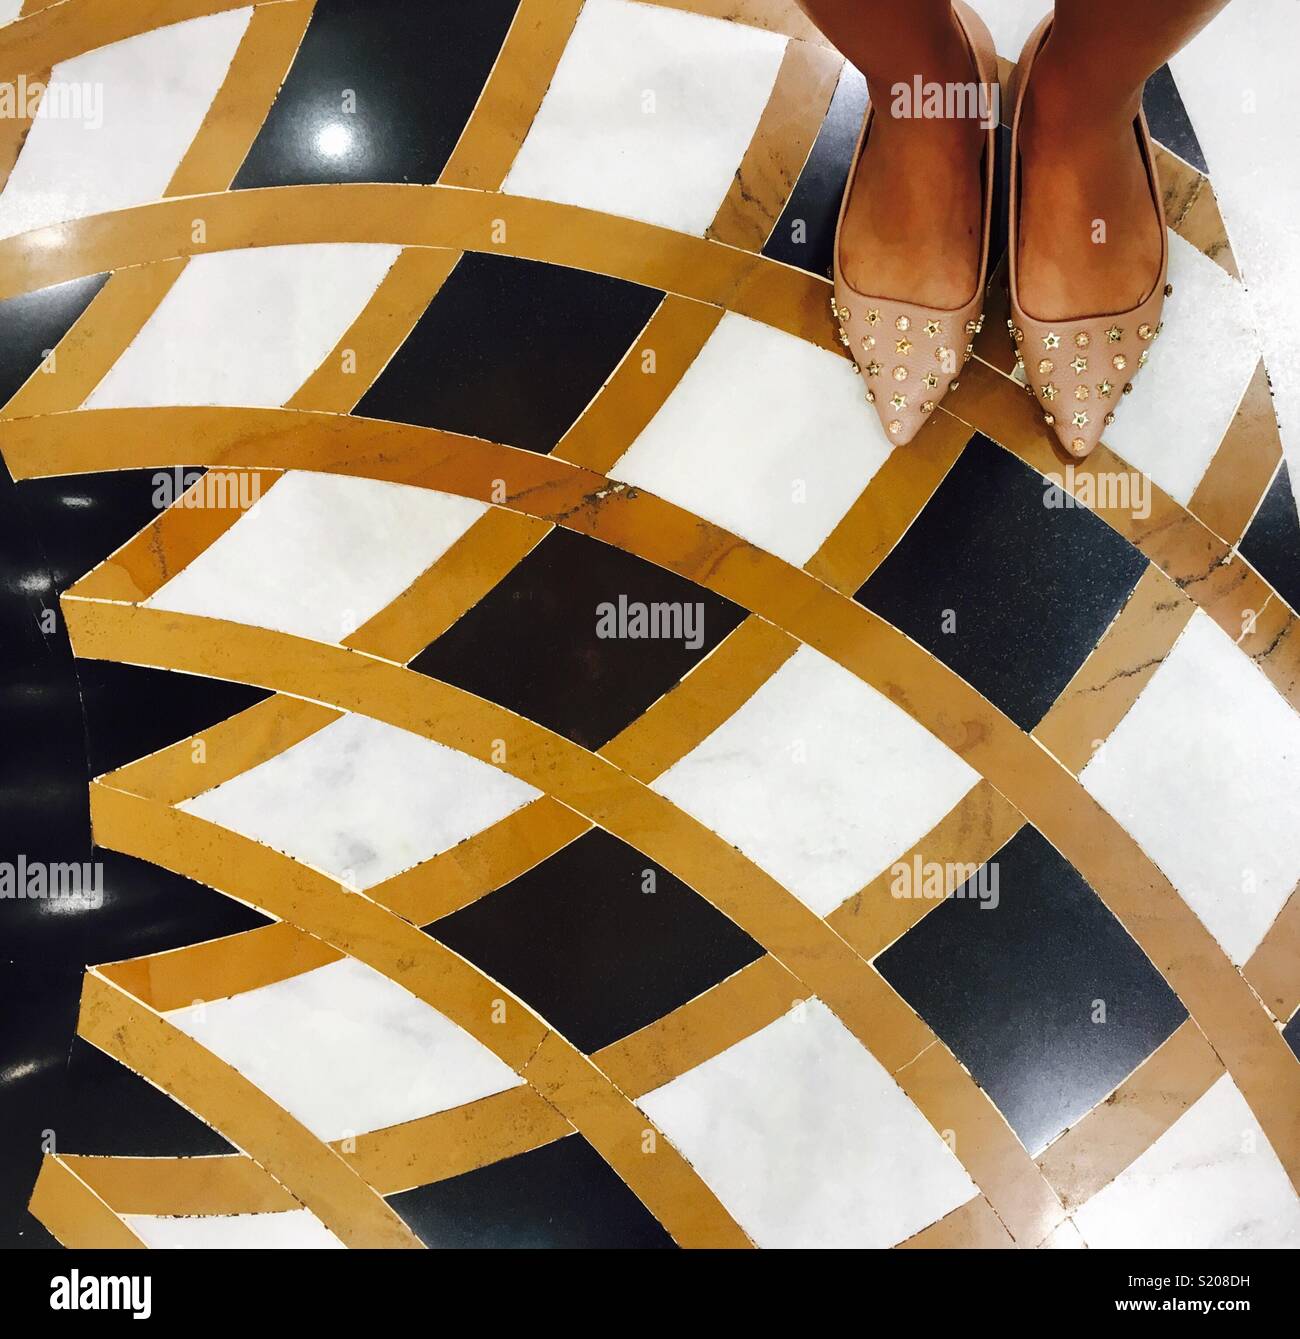 Beautiful feet on tiles Stock Photo